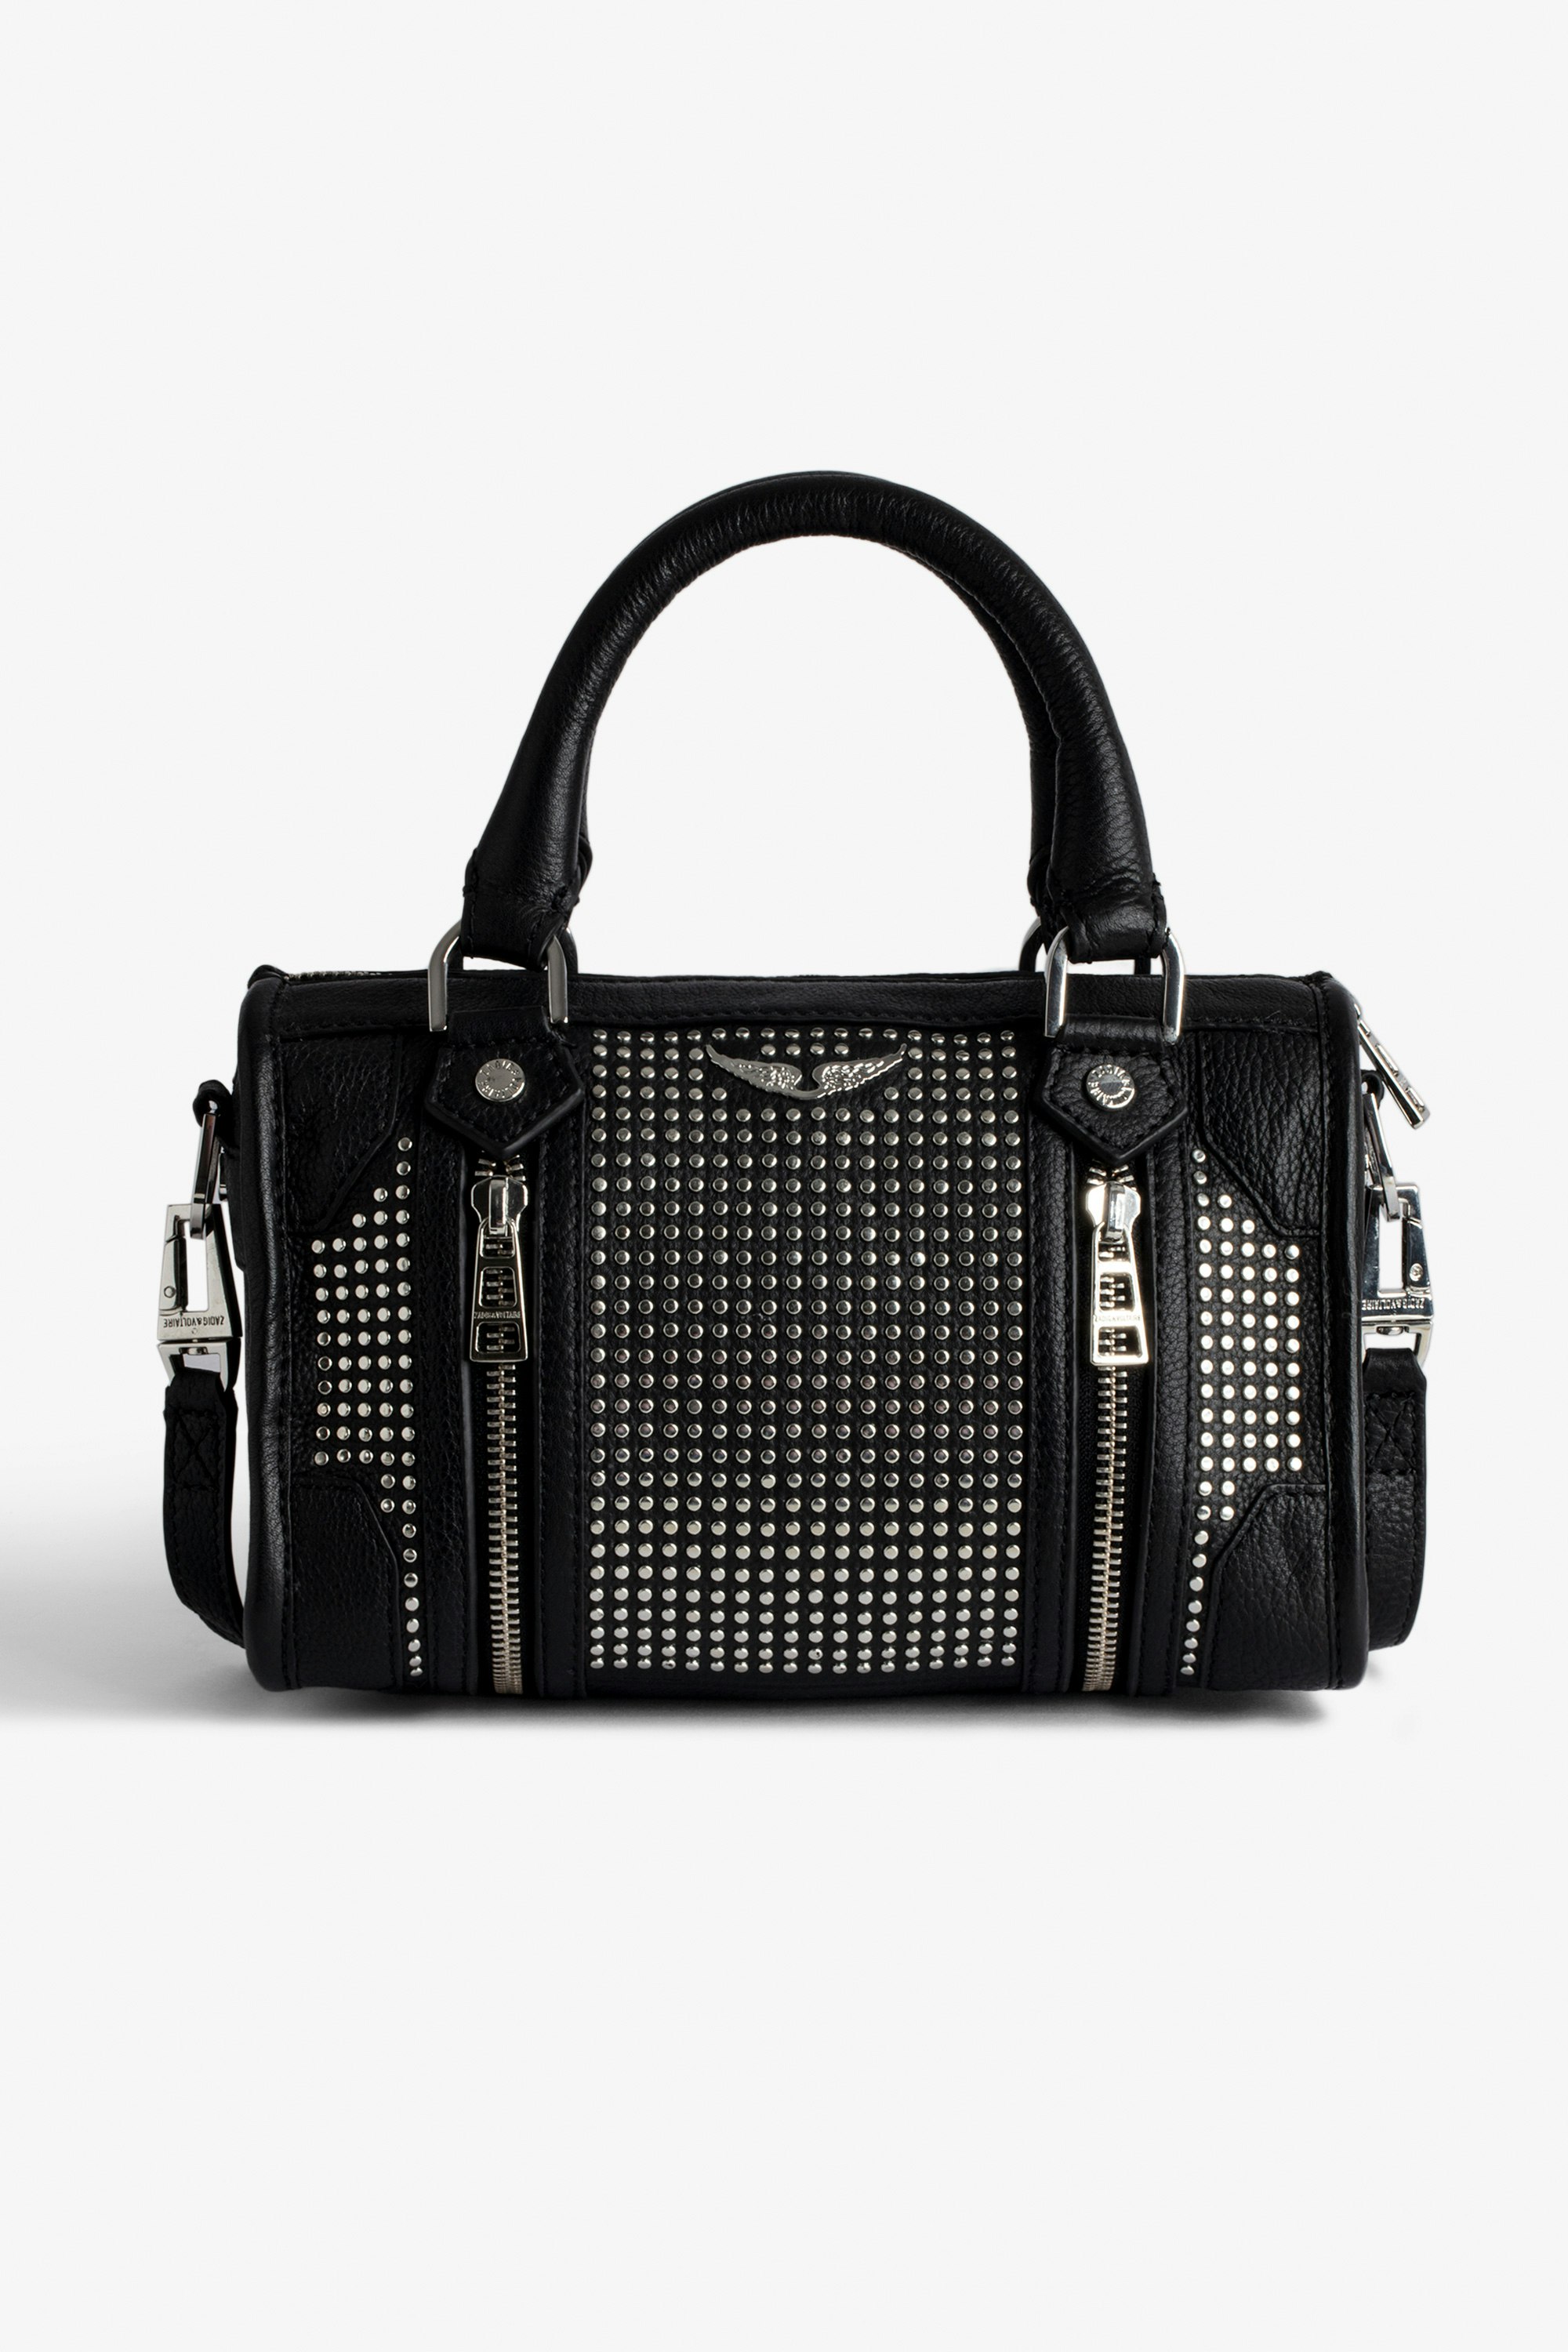 Borsa XS Sunny #2 Piccola borsa con cerniera in pelle nera con borchie e tracolla donna.